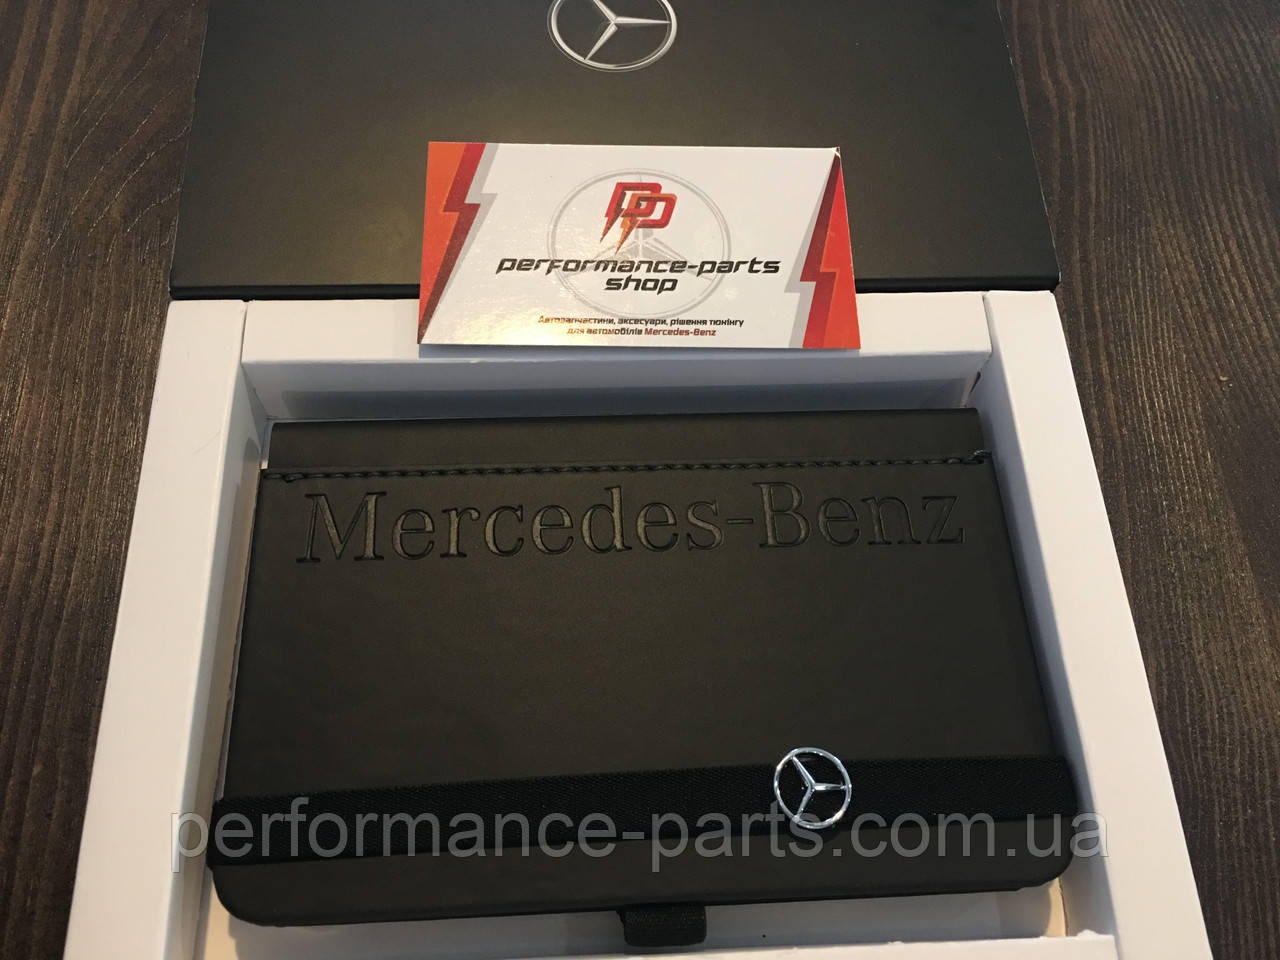 Нотатник Mercedes-Benz Collection Lnybook A6, B66953636. Оригінал. Чорного кольору